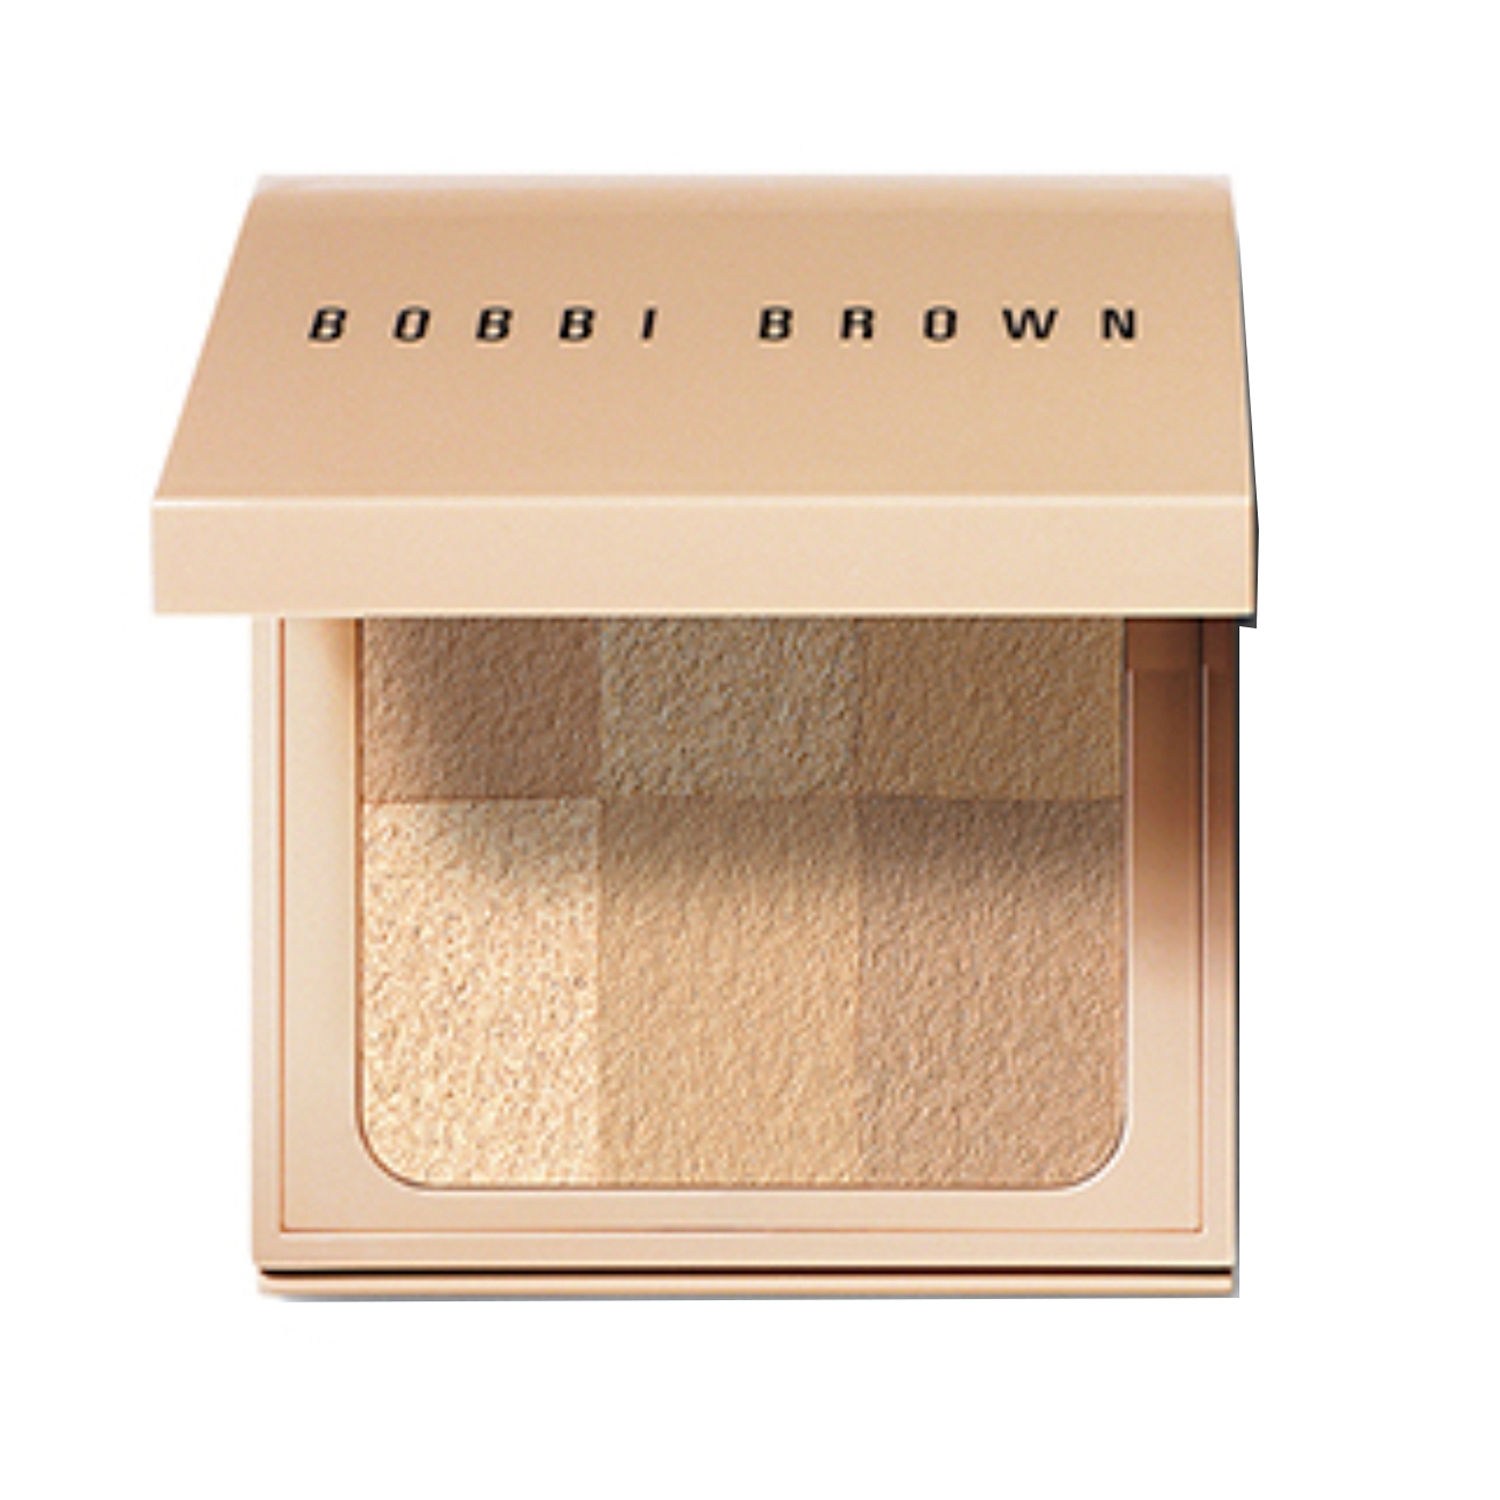 Bobbi Brown | Bobbi Brown Nude Finish Illuminating Powder - Nude (6.6g)